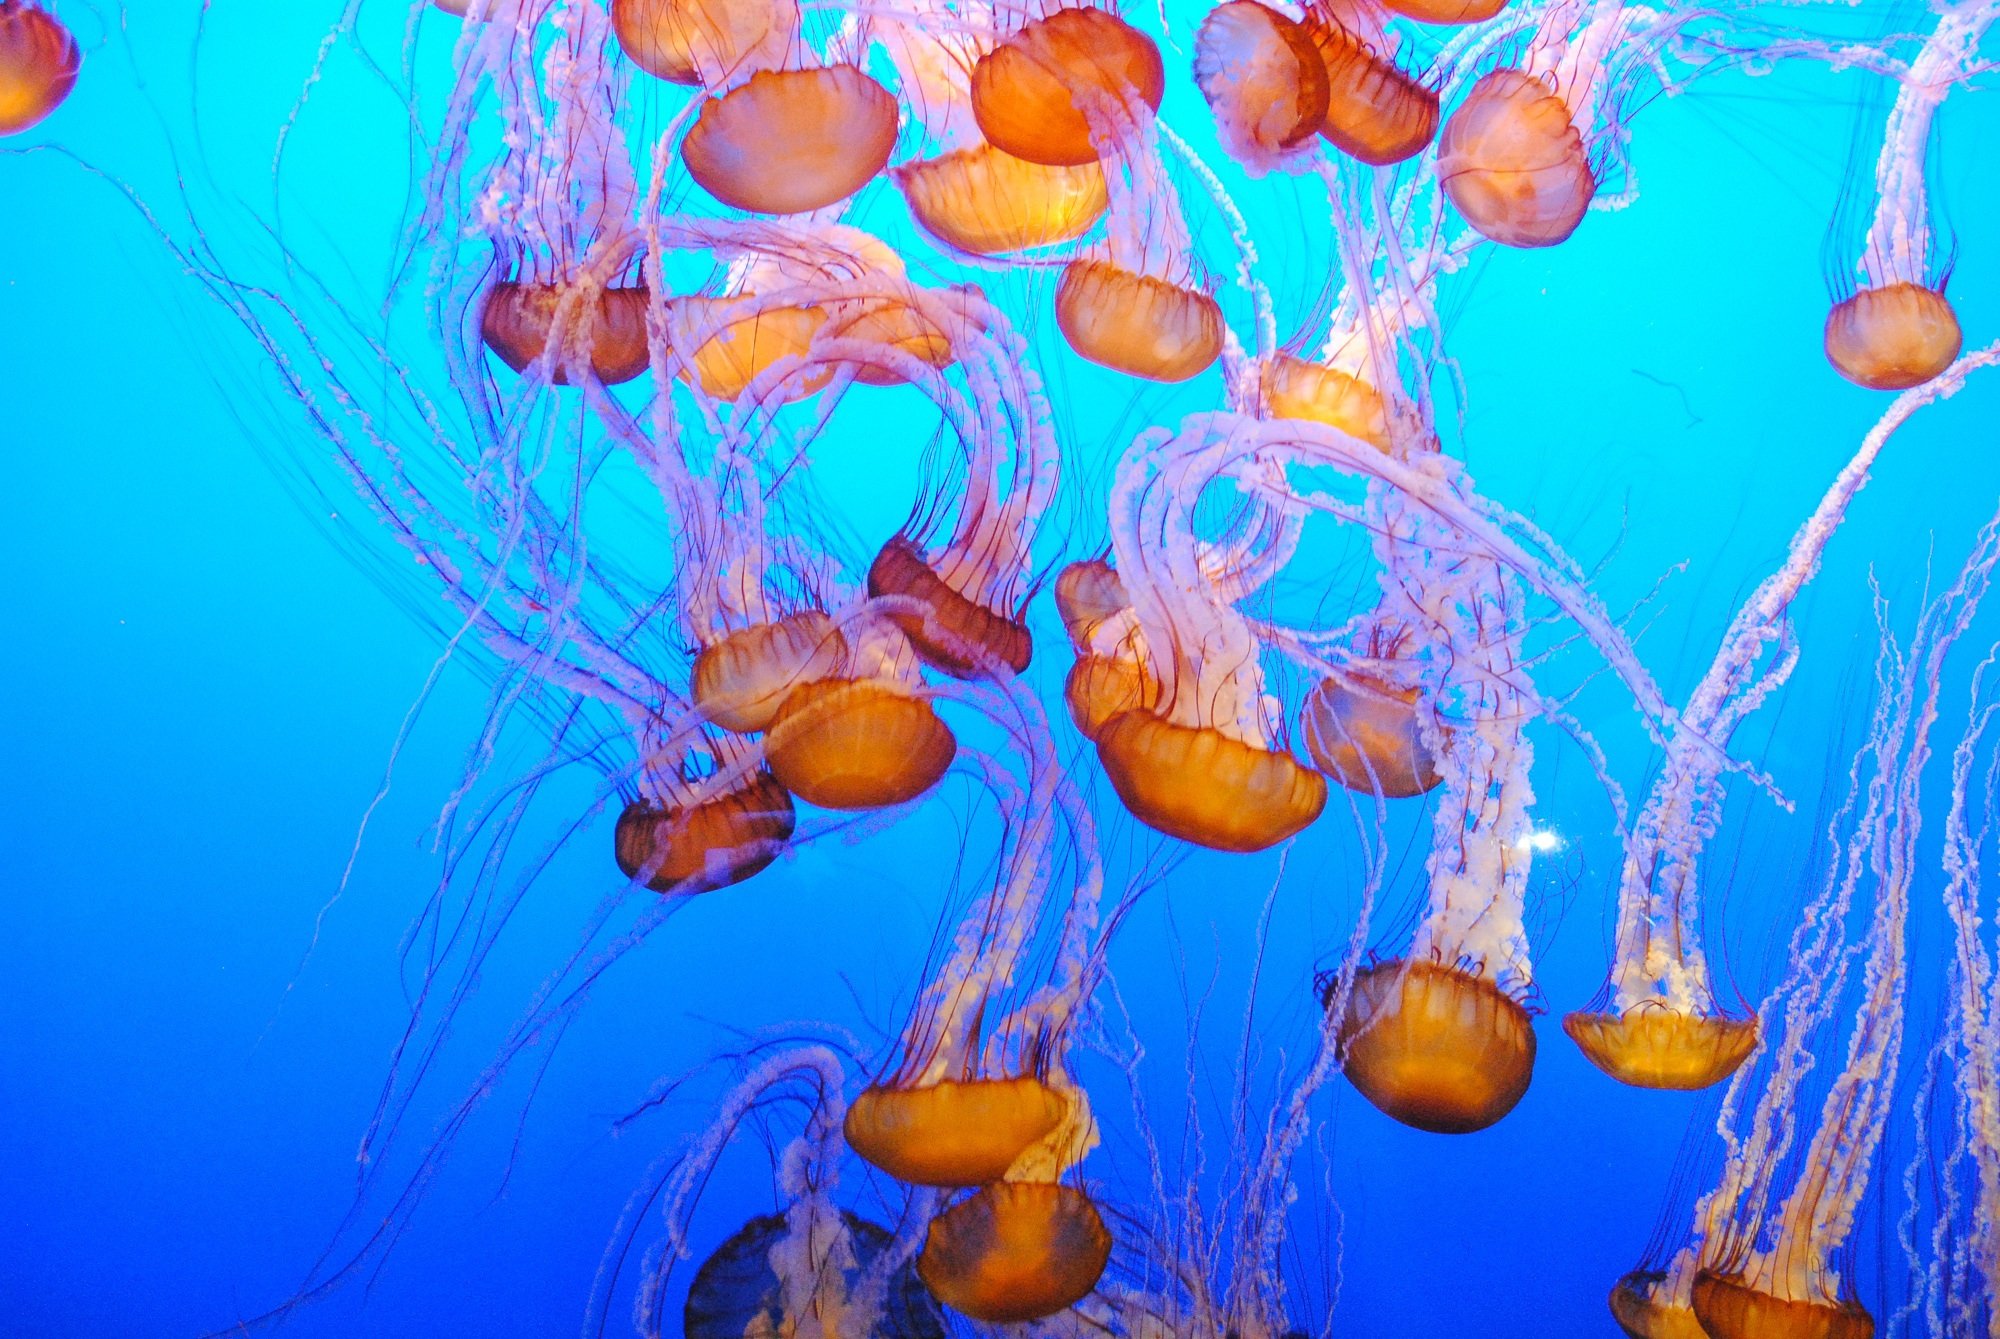 Jelly fish exhibit at Monterey Bay Aquarium